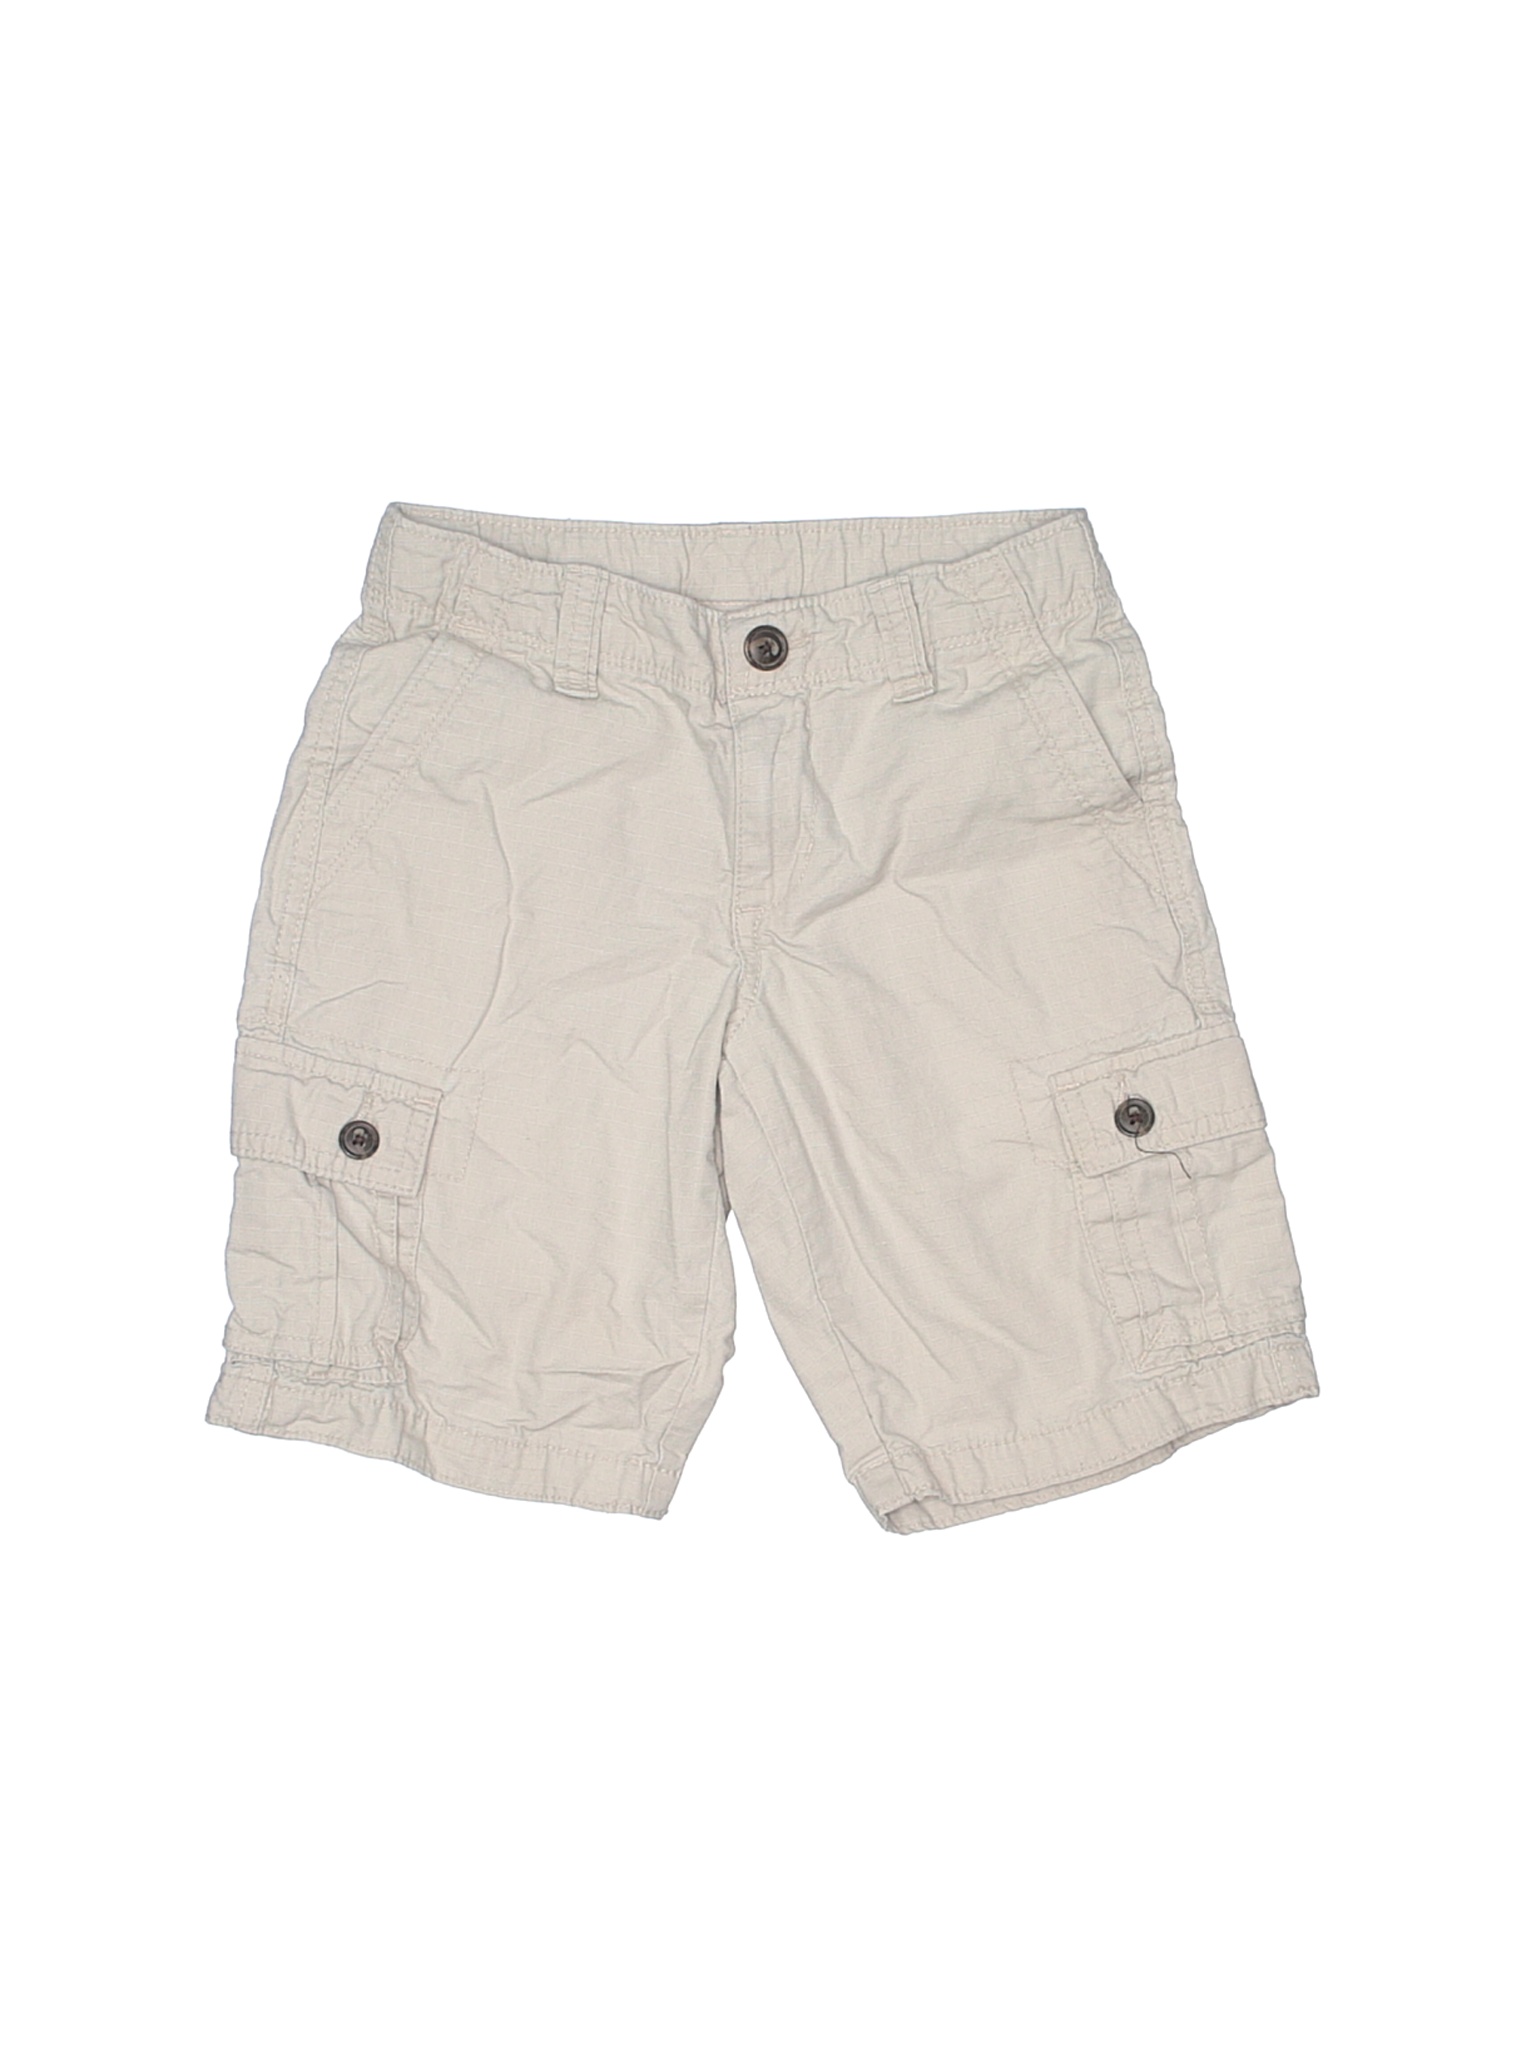 Arizona Jean Company Boys Brown Cargo Shorts 7 | eBay